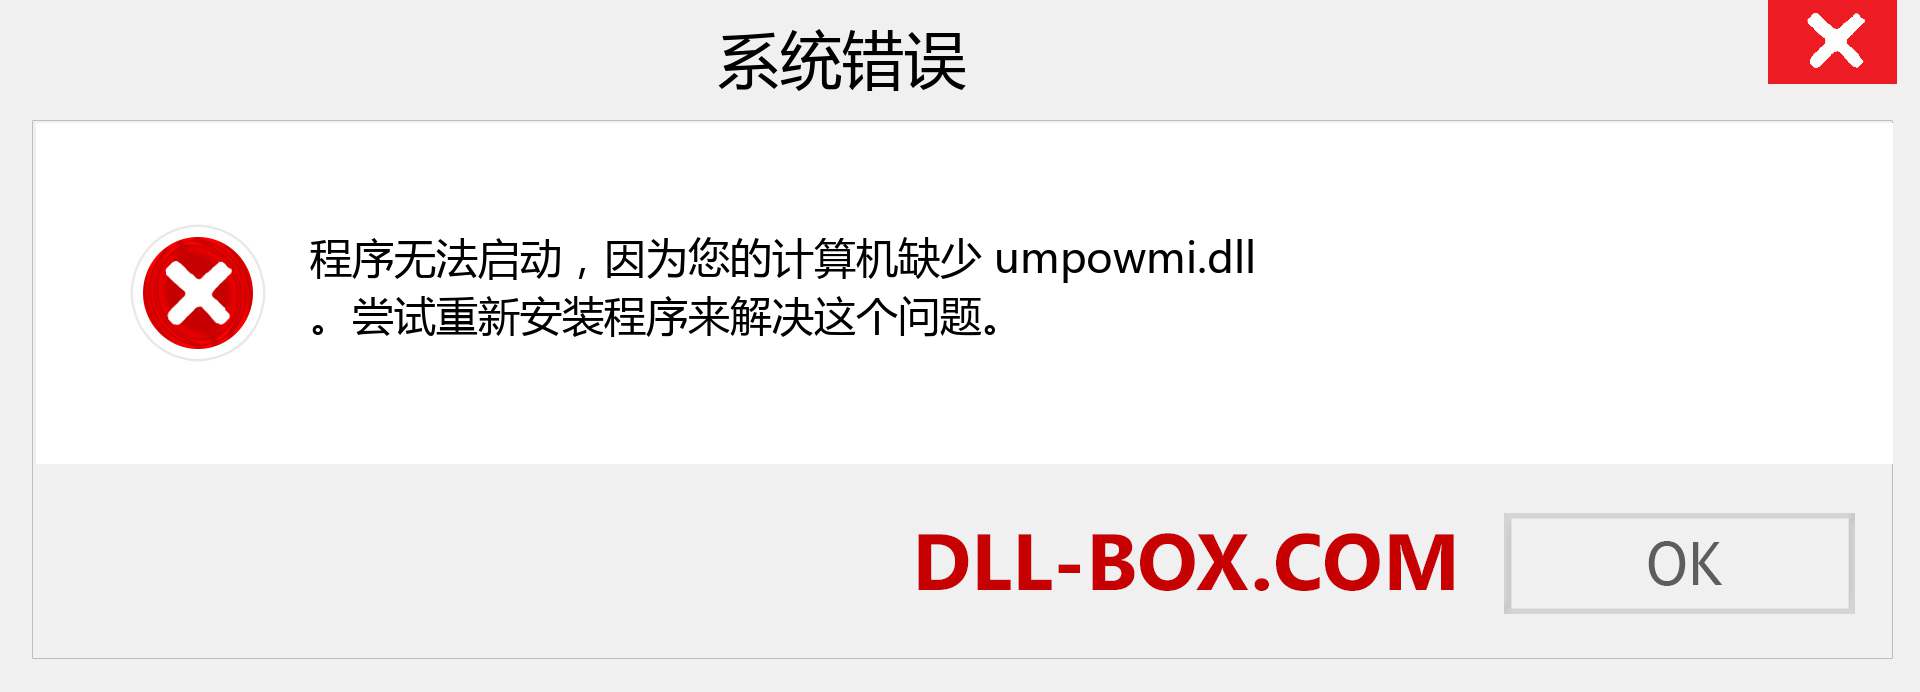 umpowmi.dll 文件丢失？。 适用于 Windows 7、8、10 的下载 - 修复 Windows、照片、图像上的 umpowmi dll 丢失错误